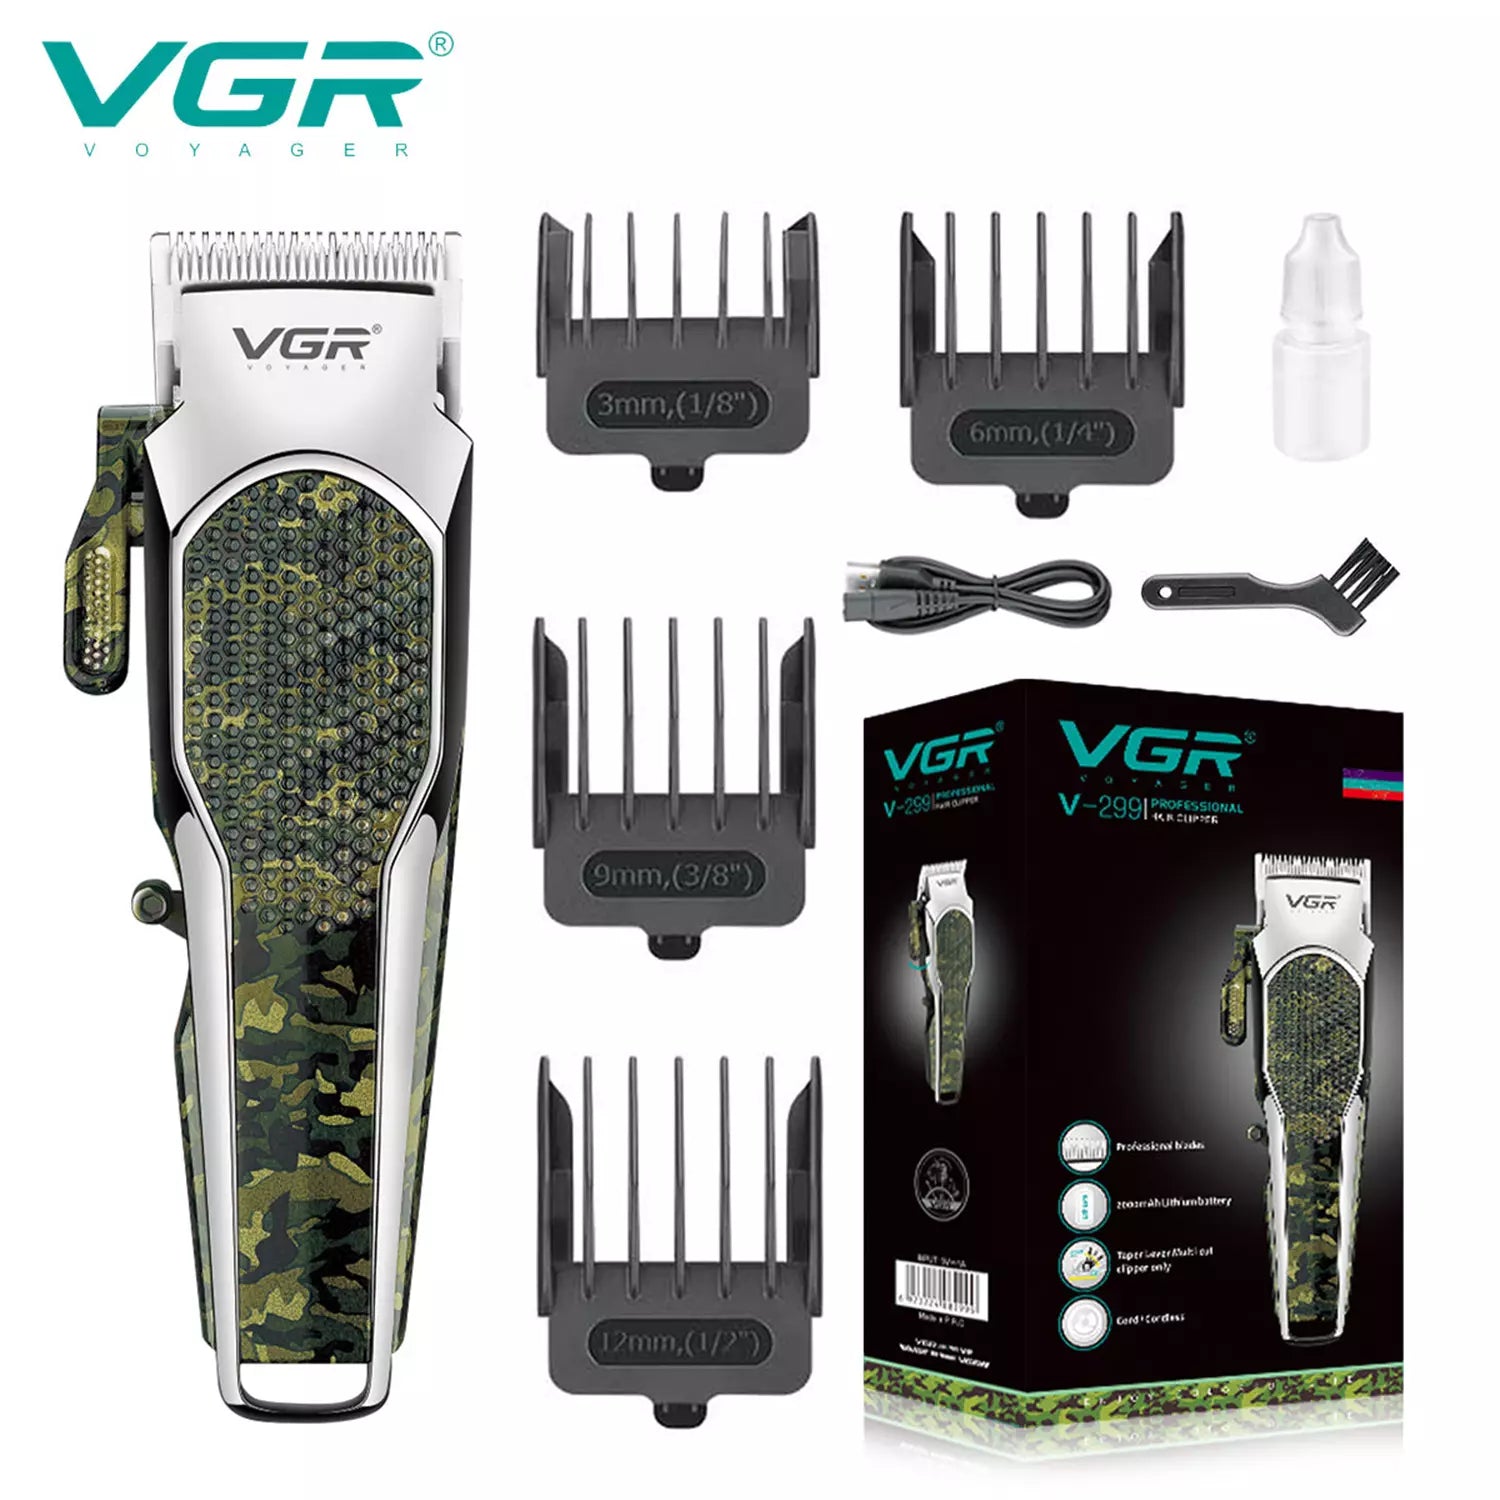 VGR, VGRindia, VGRofficial, VGR V-299